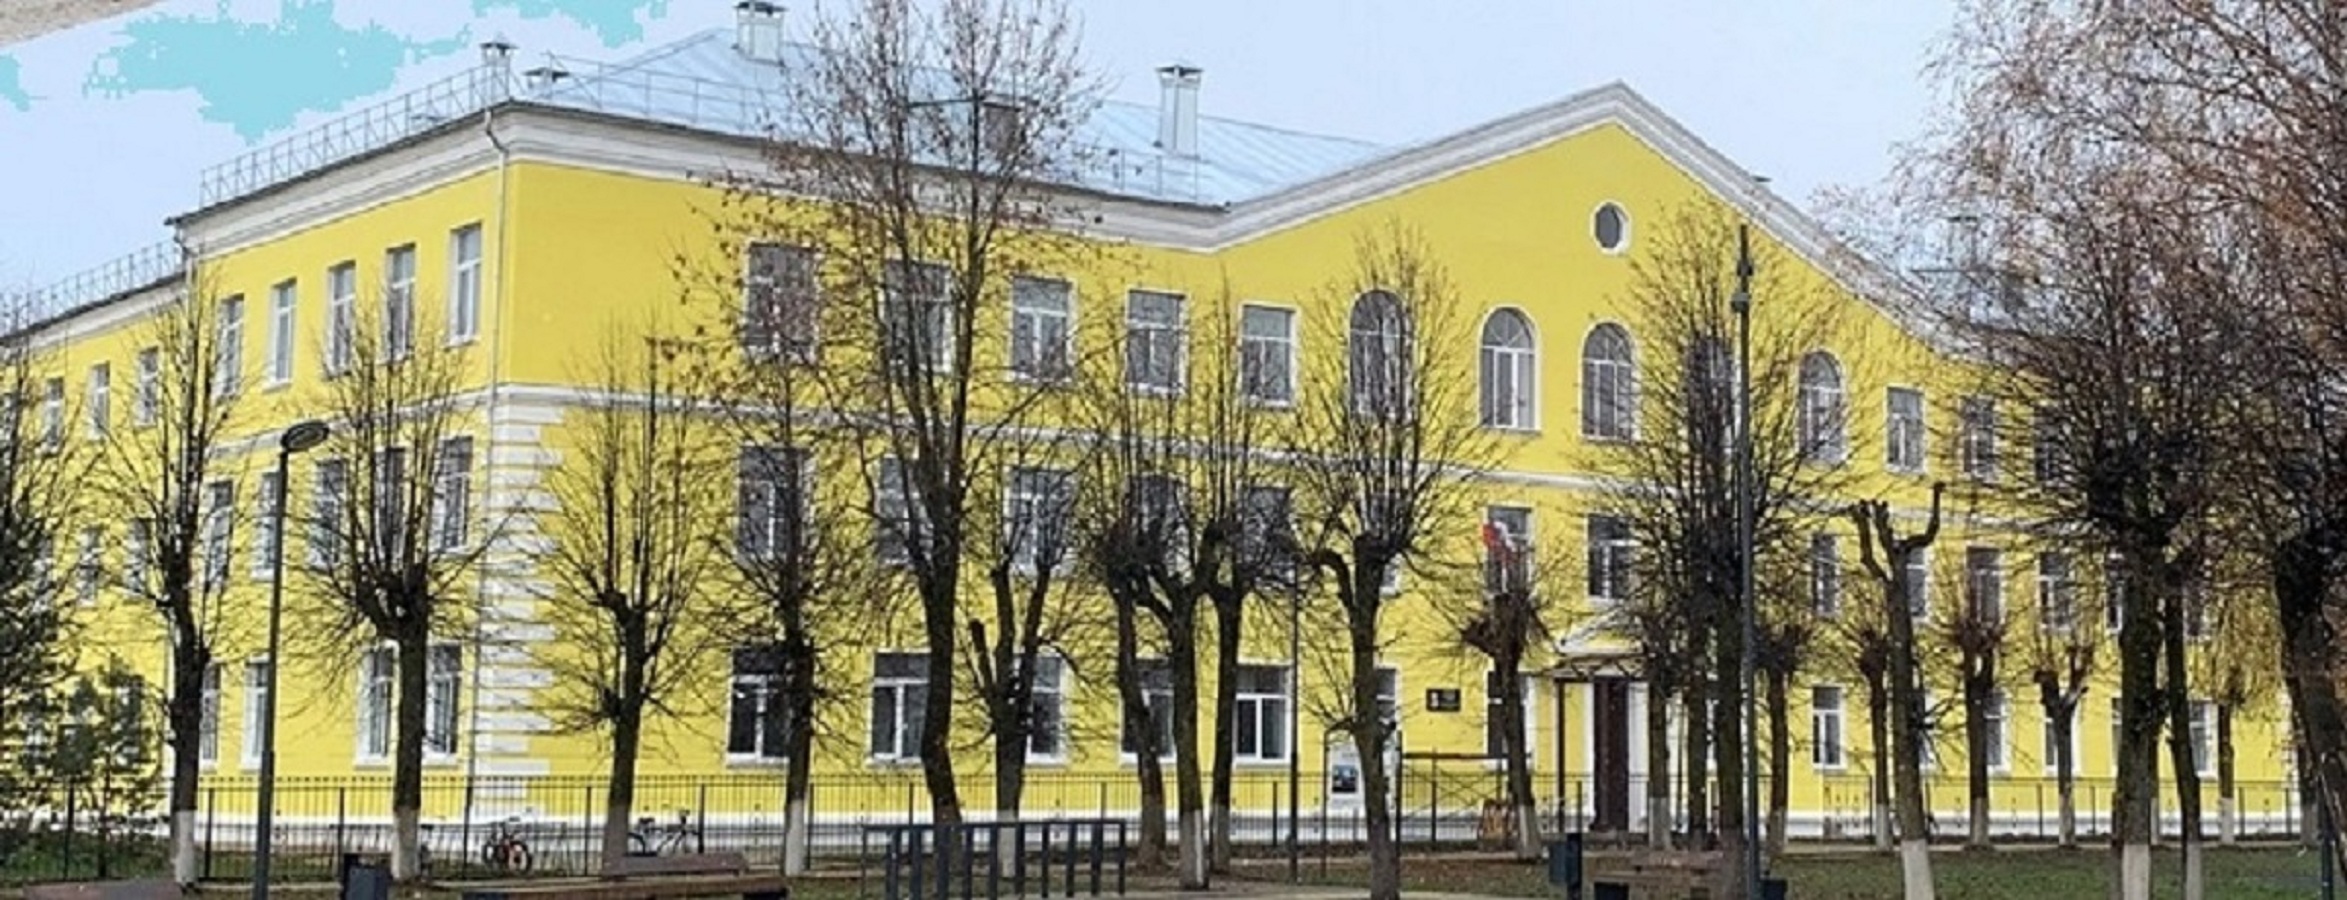 Здание в котором расположена школа.